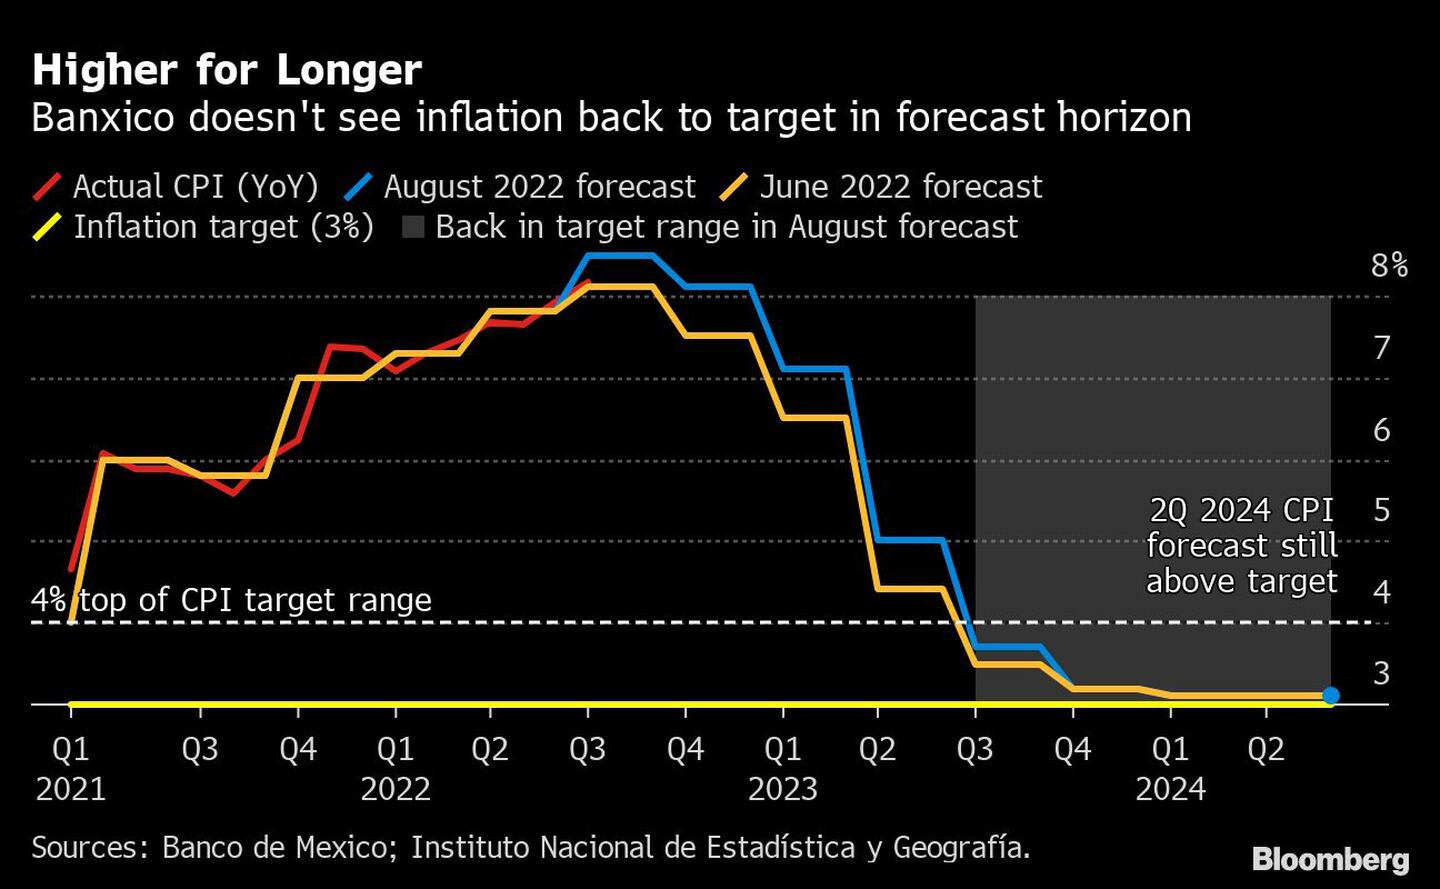 Banxico no ve que la inflación vuelva al objetivo en el horizonte de previsióndfd